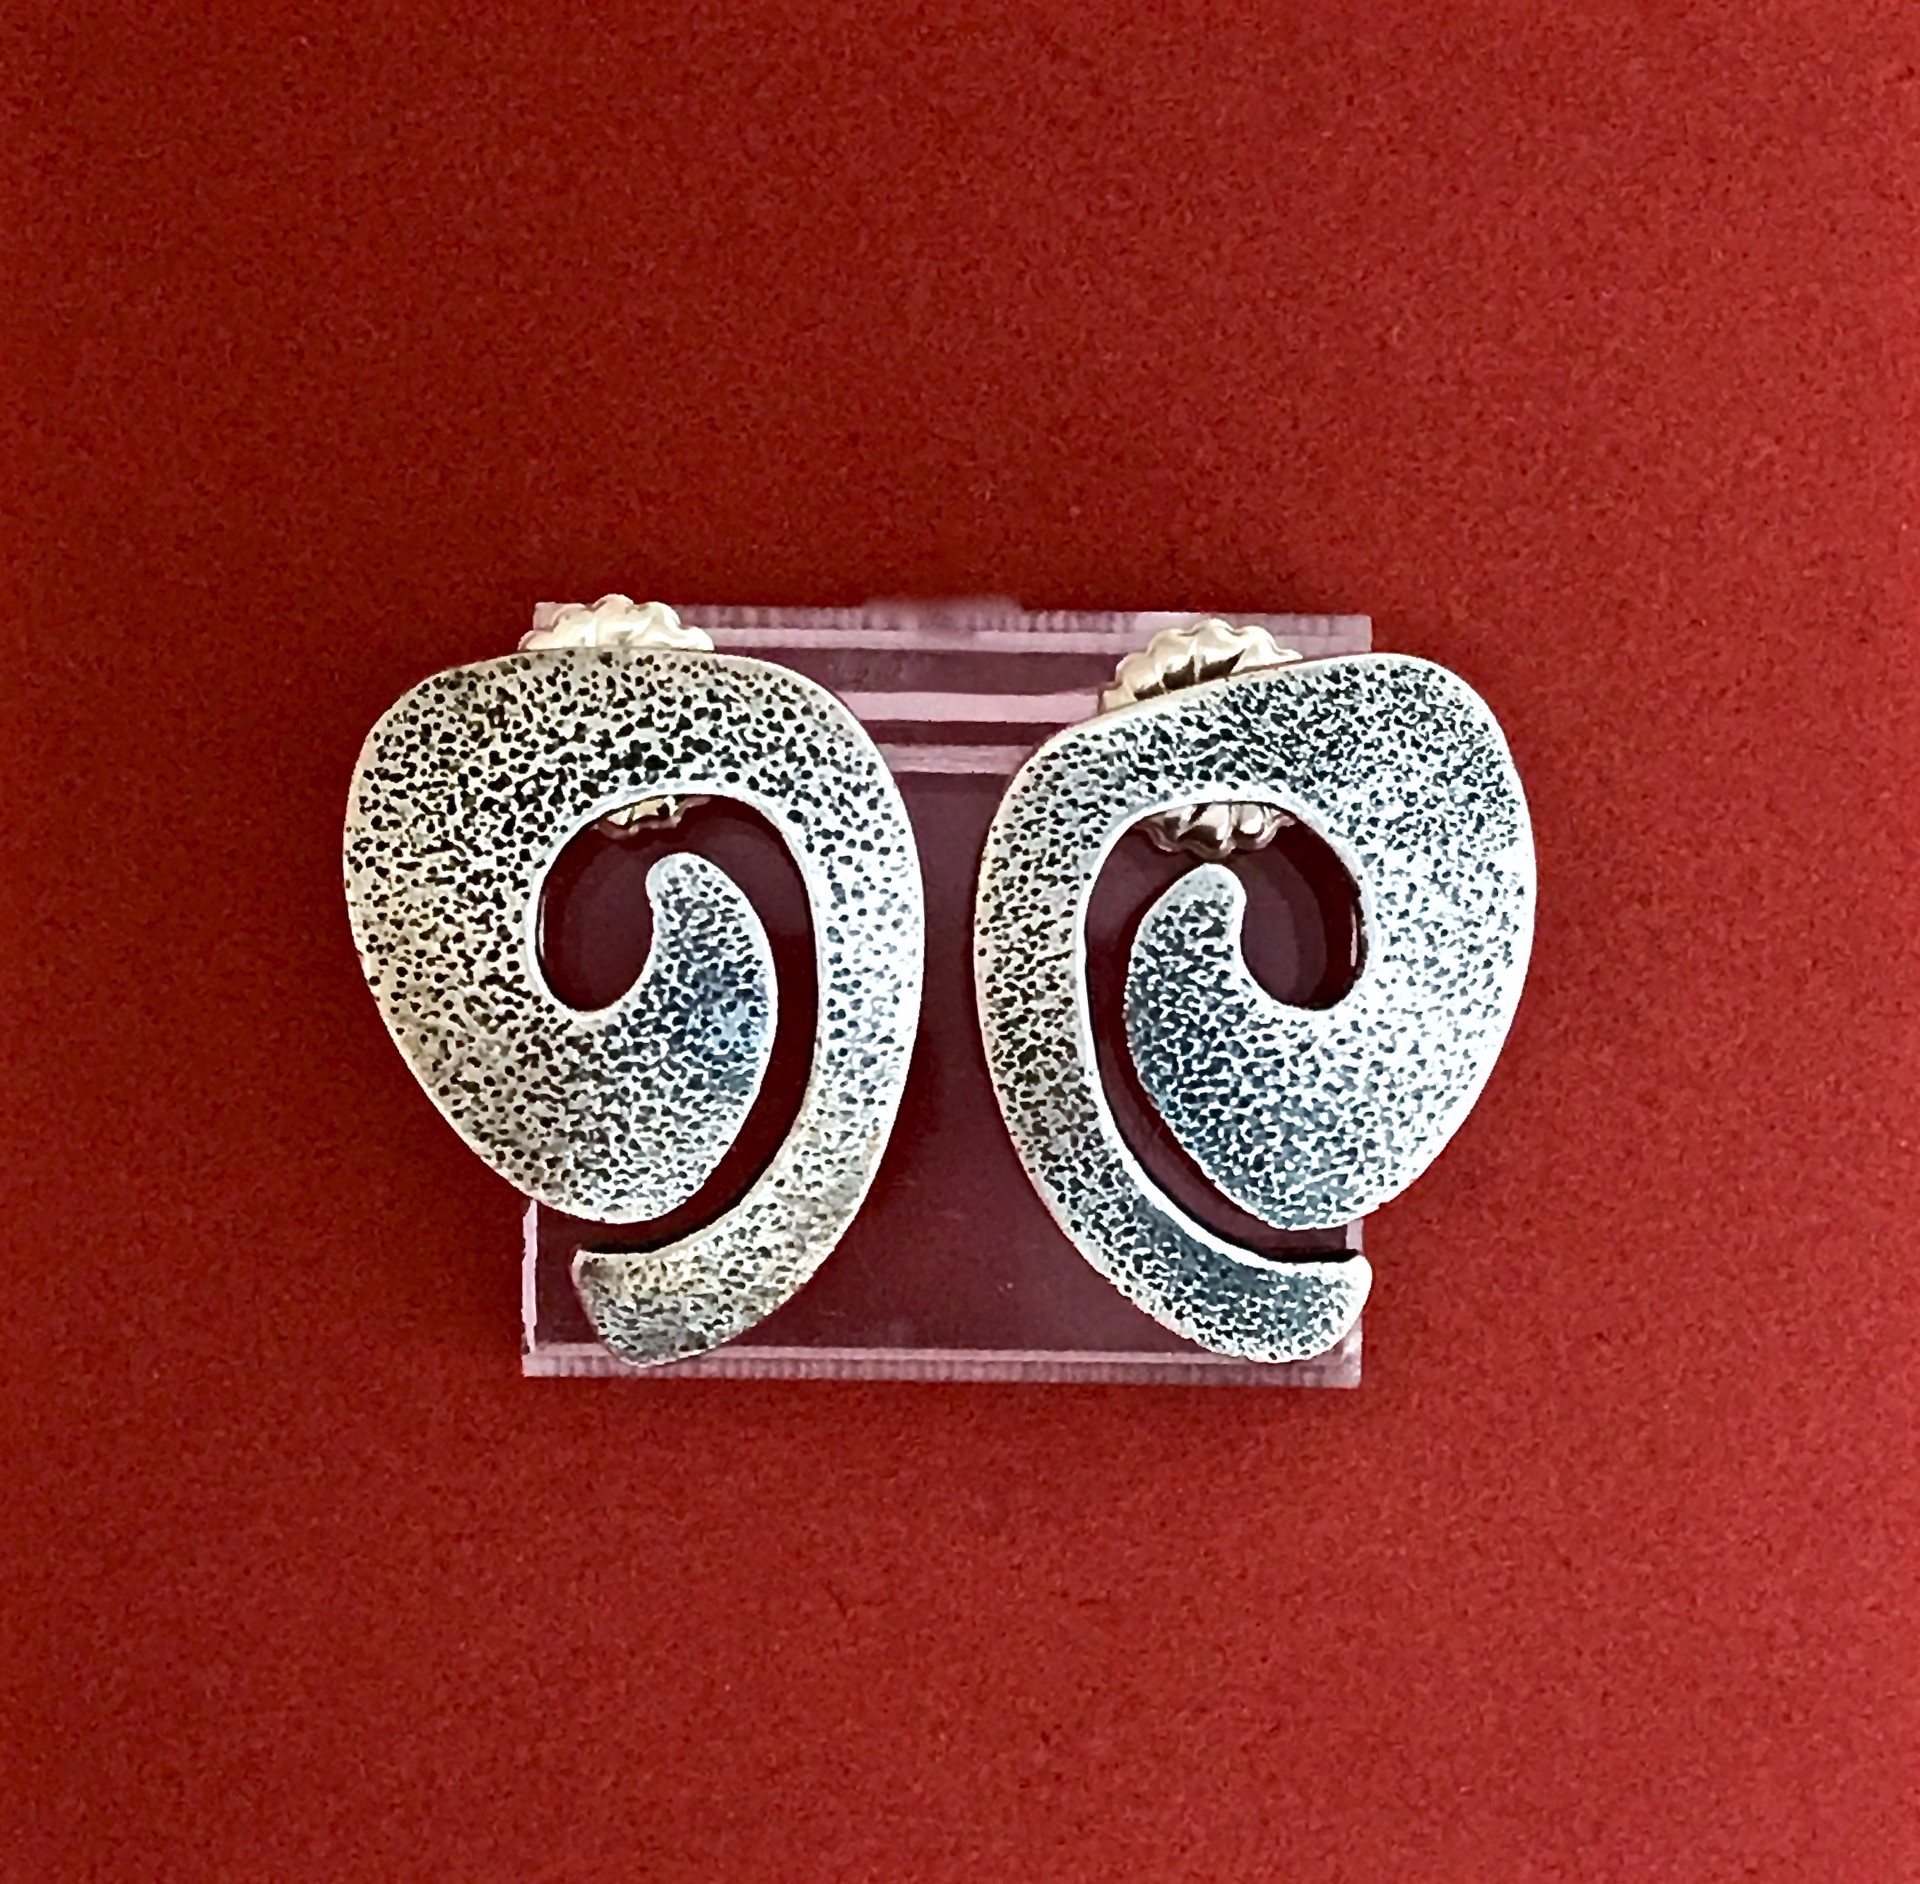 Swirl earrings post by Melanie A. Yazzie